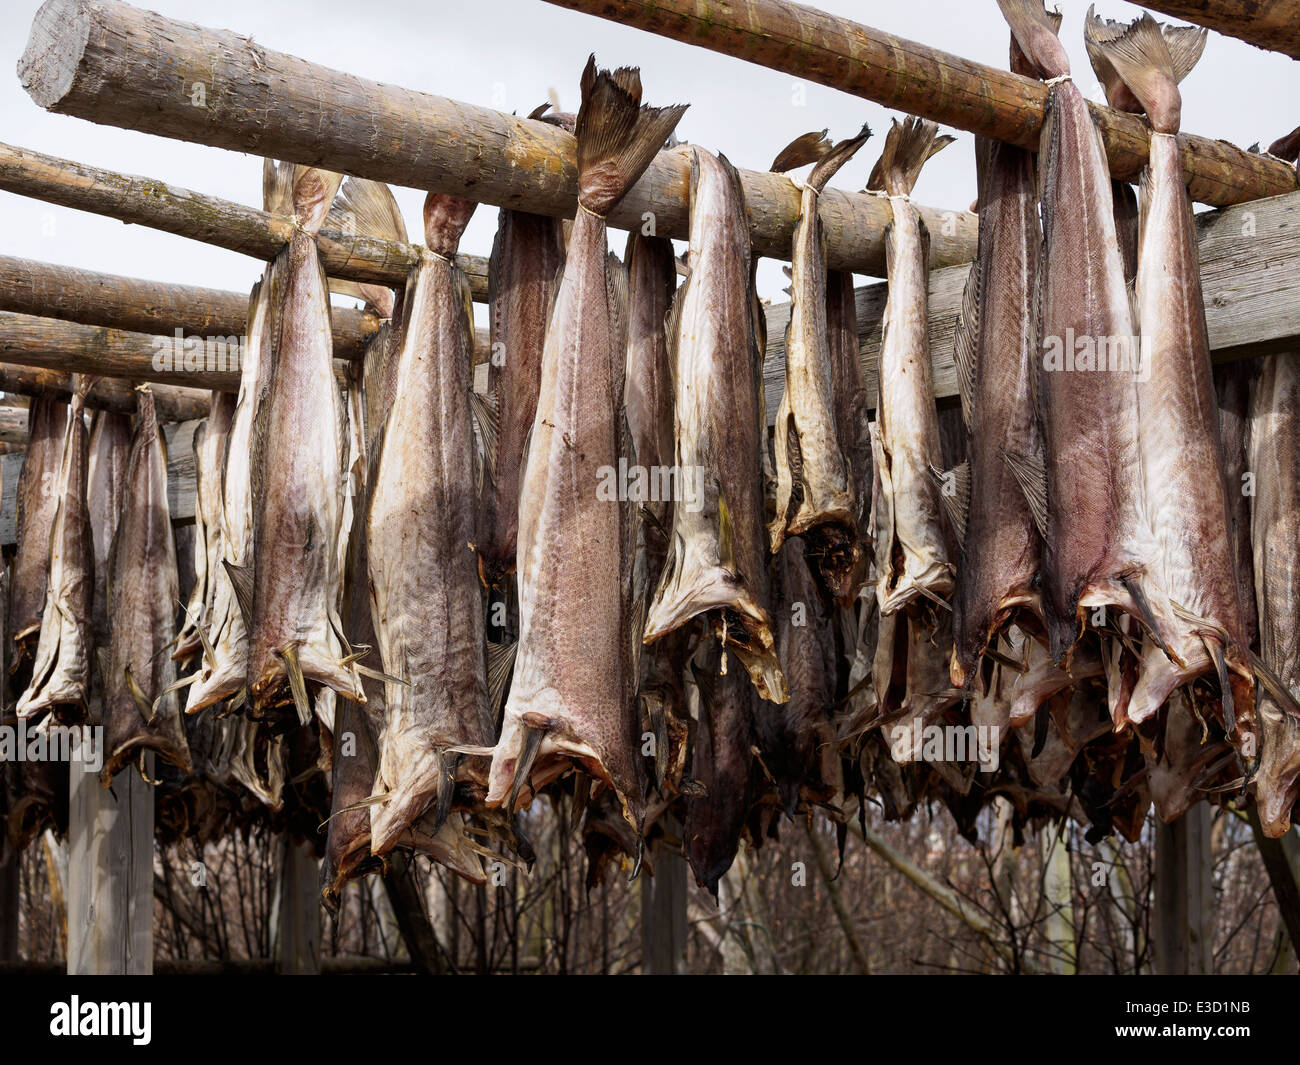 Stoccafisso (cod) è appesa ad asciugare su un rack di legno in Henningsvaer sulle isole Lofoten in Norvegia. Foto Stock